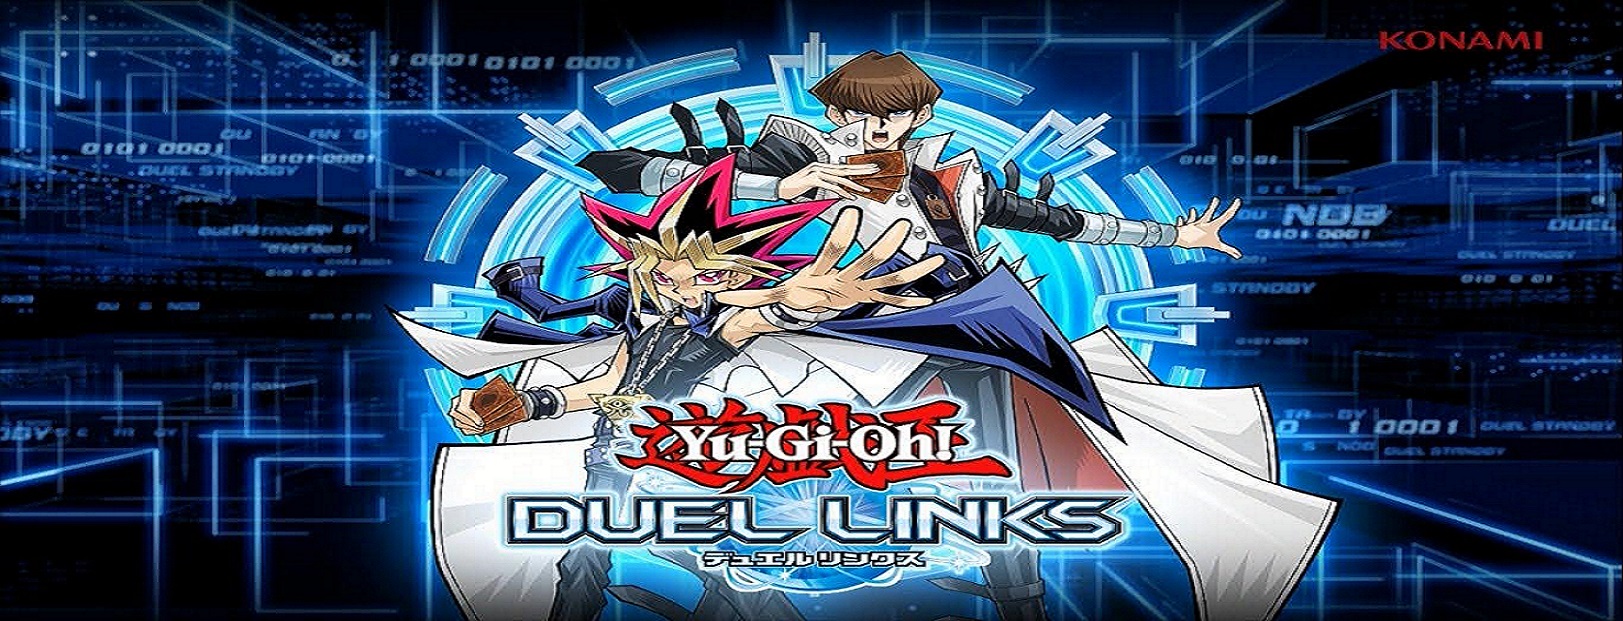 Giới thiệu về Yu-Gi-Oh! Duel Links